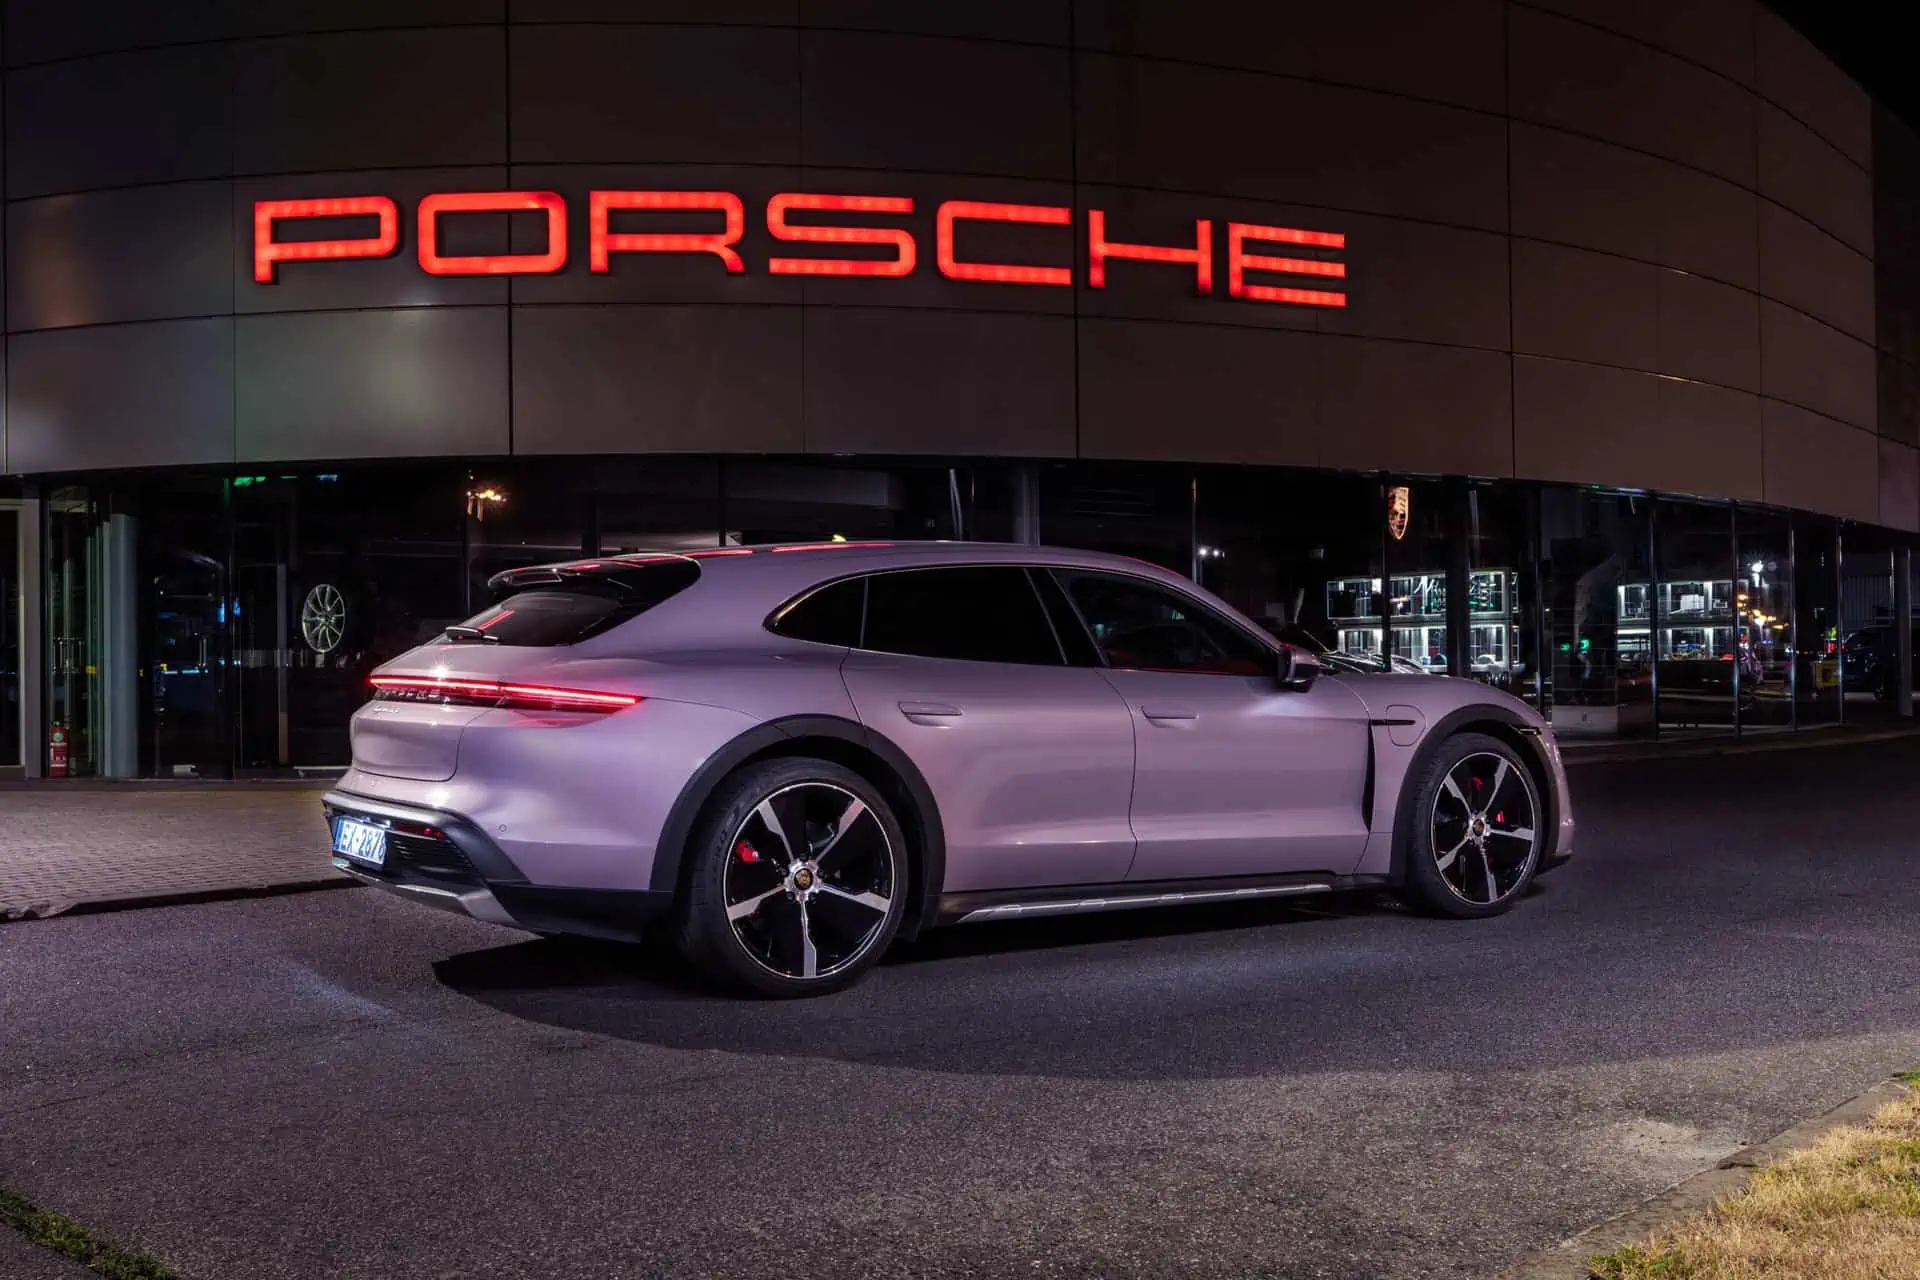 Porsche Aktie Prognose 2023: Vollgas voraus!